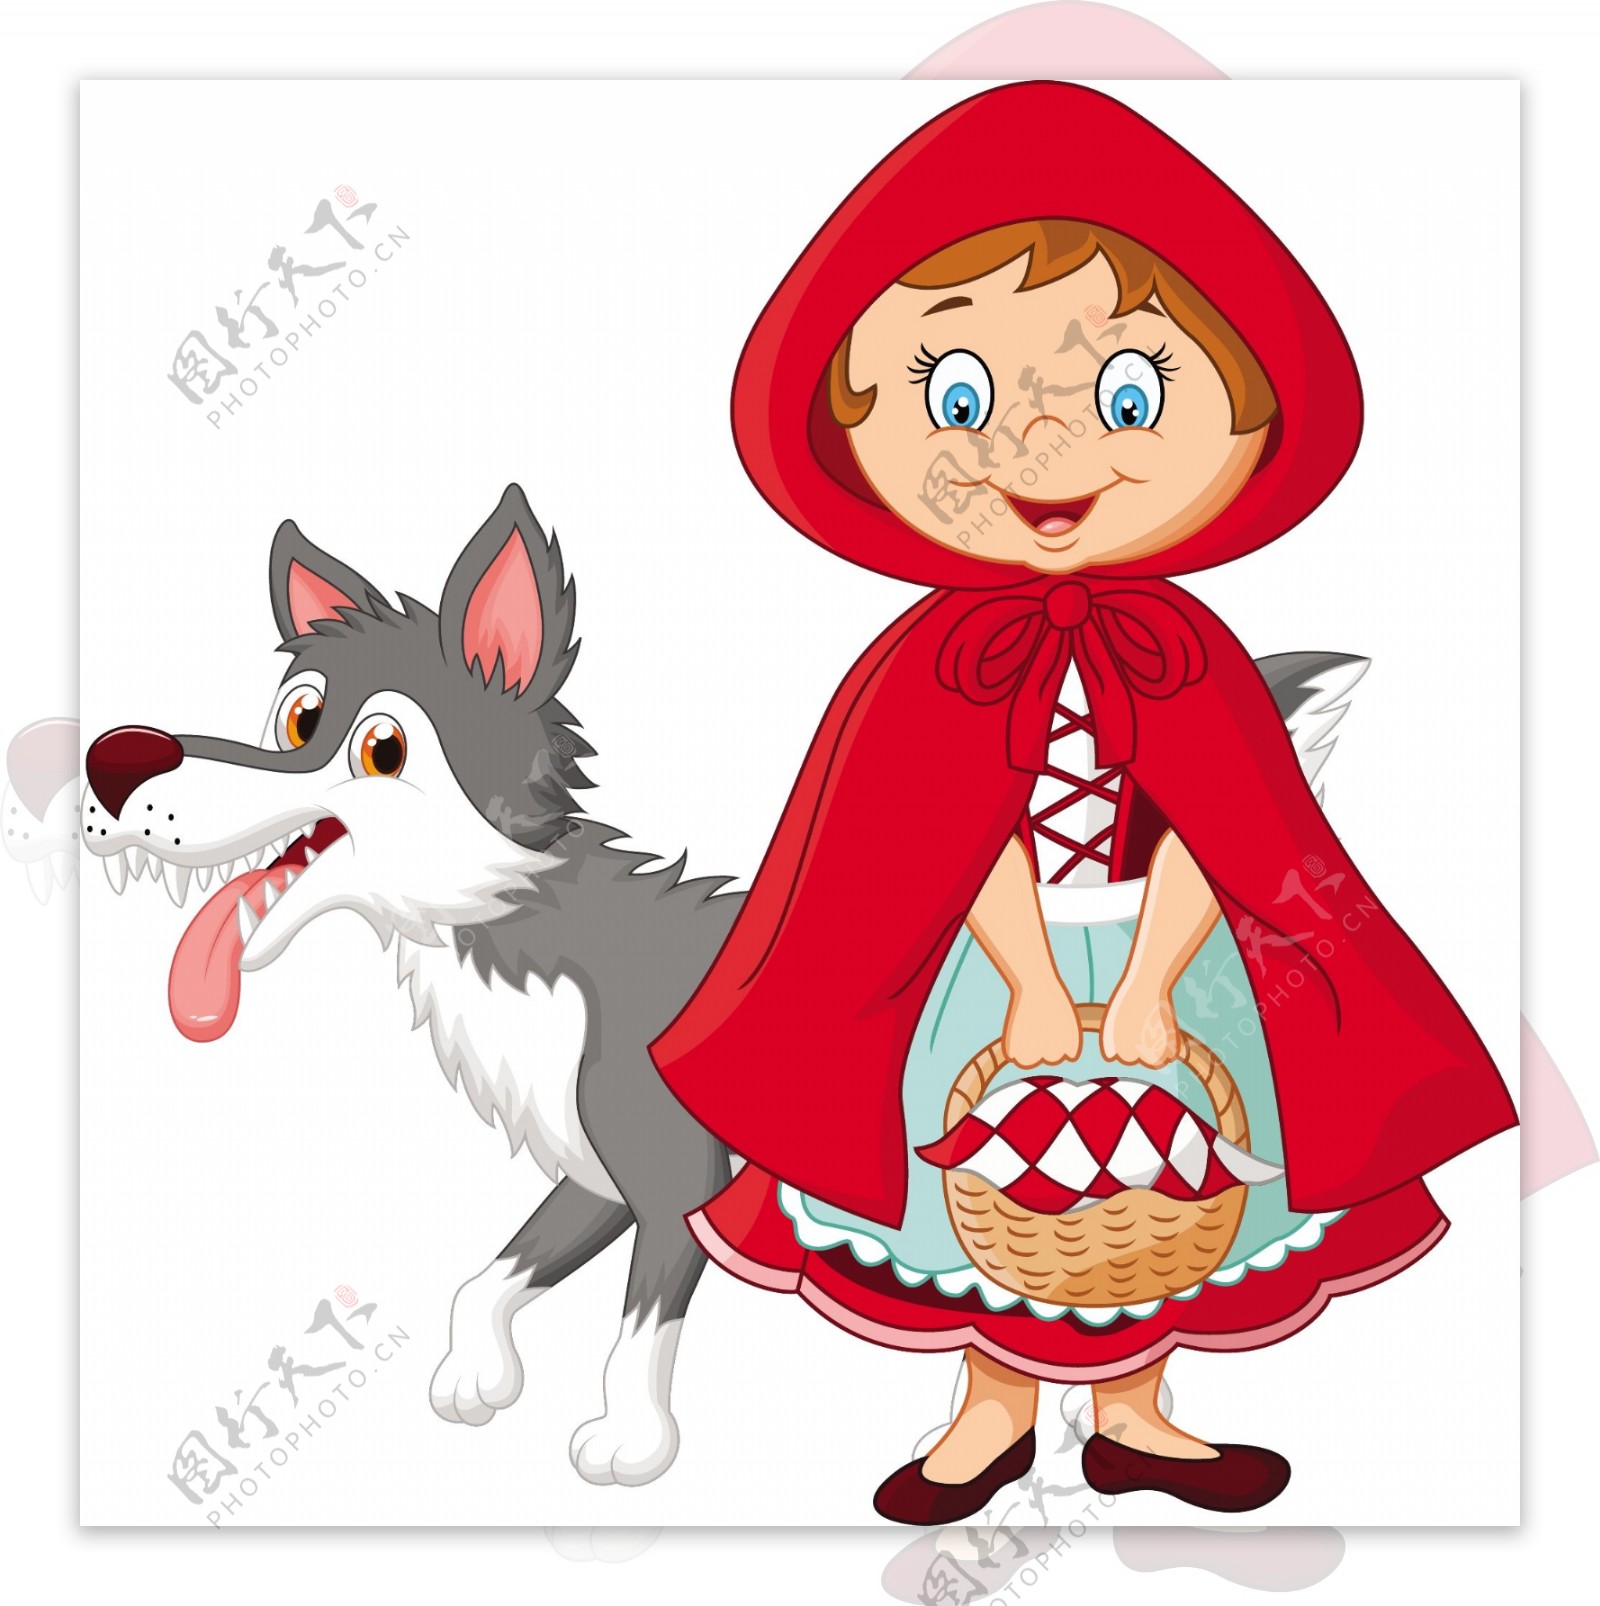 卡通童话故事狼外婆和小红帽